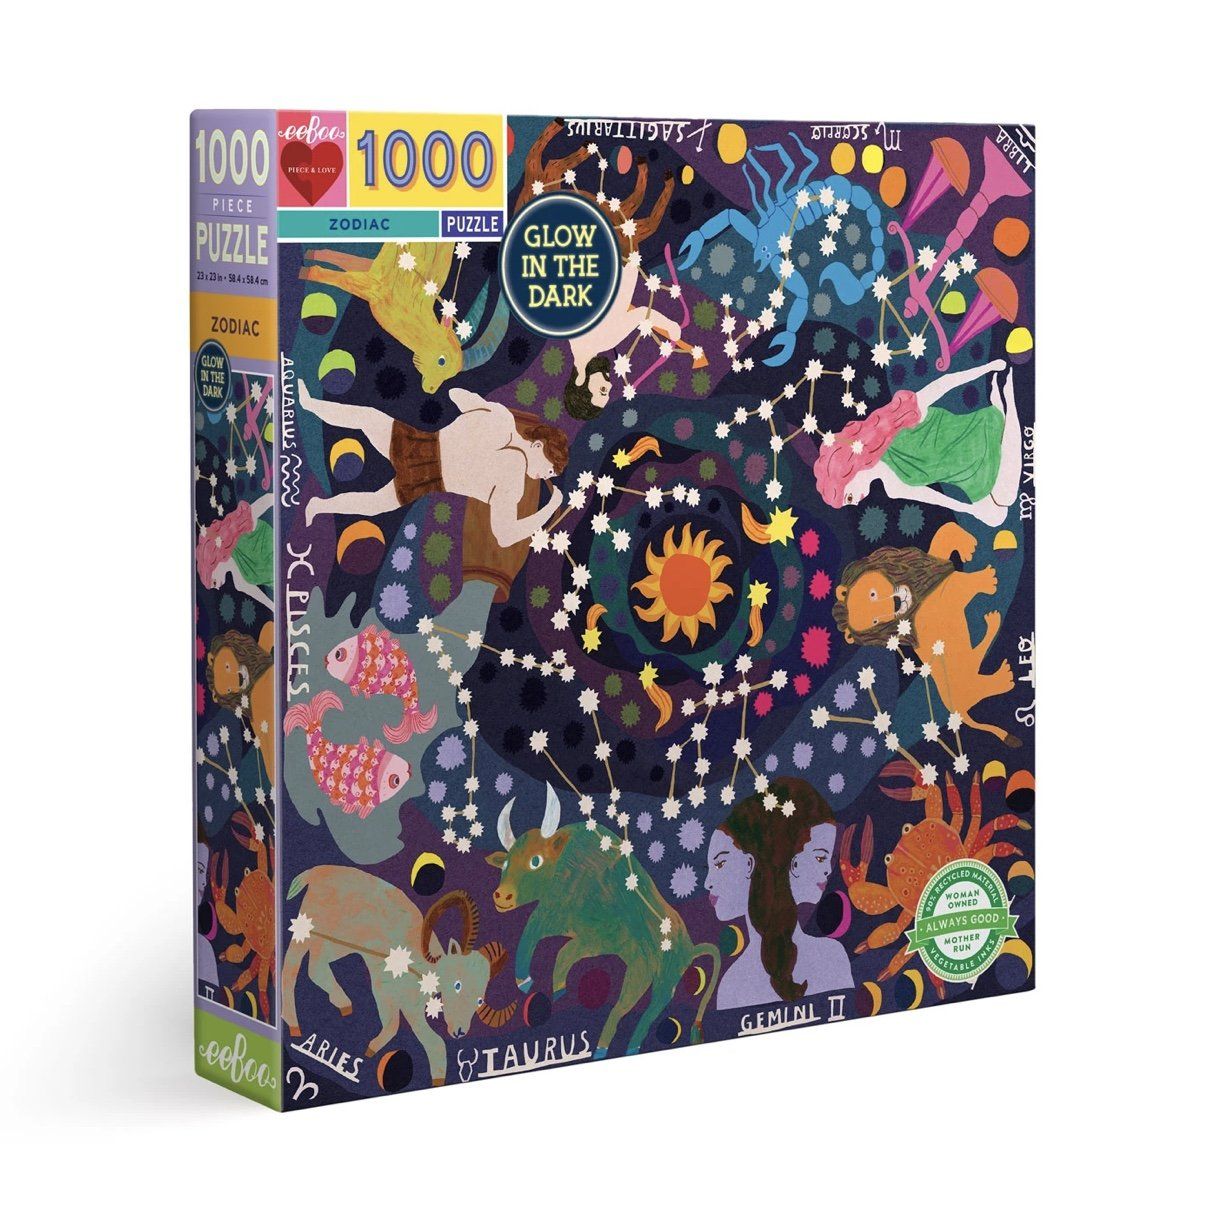 Zodiac 1000 Piece Square Puzzle by eeBoo Games Eeboo Prettycleanshop